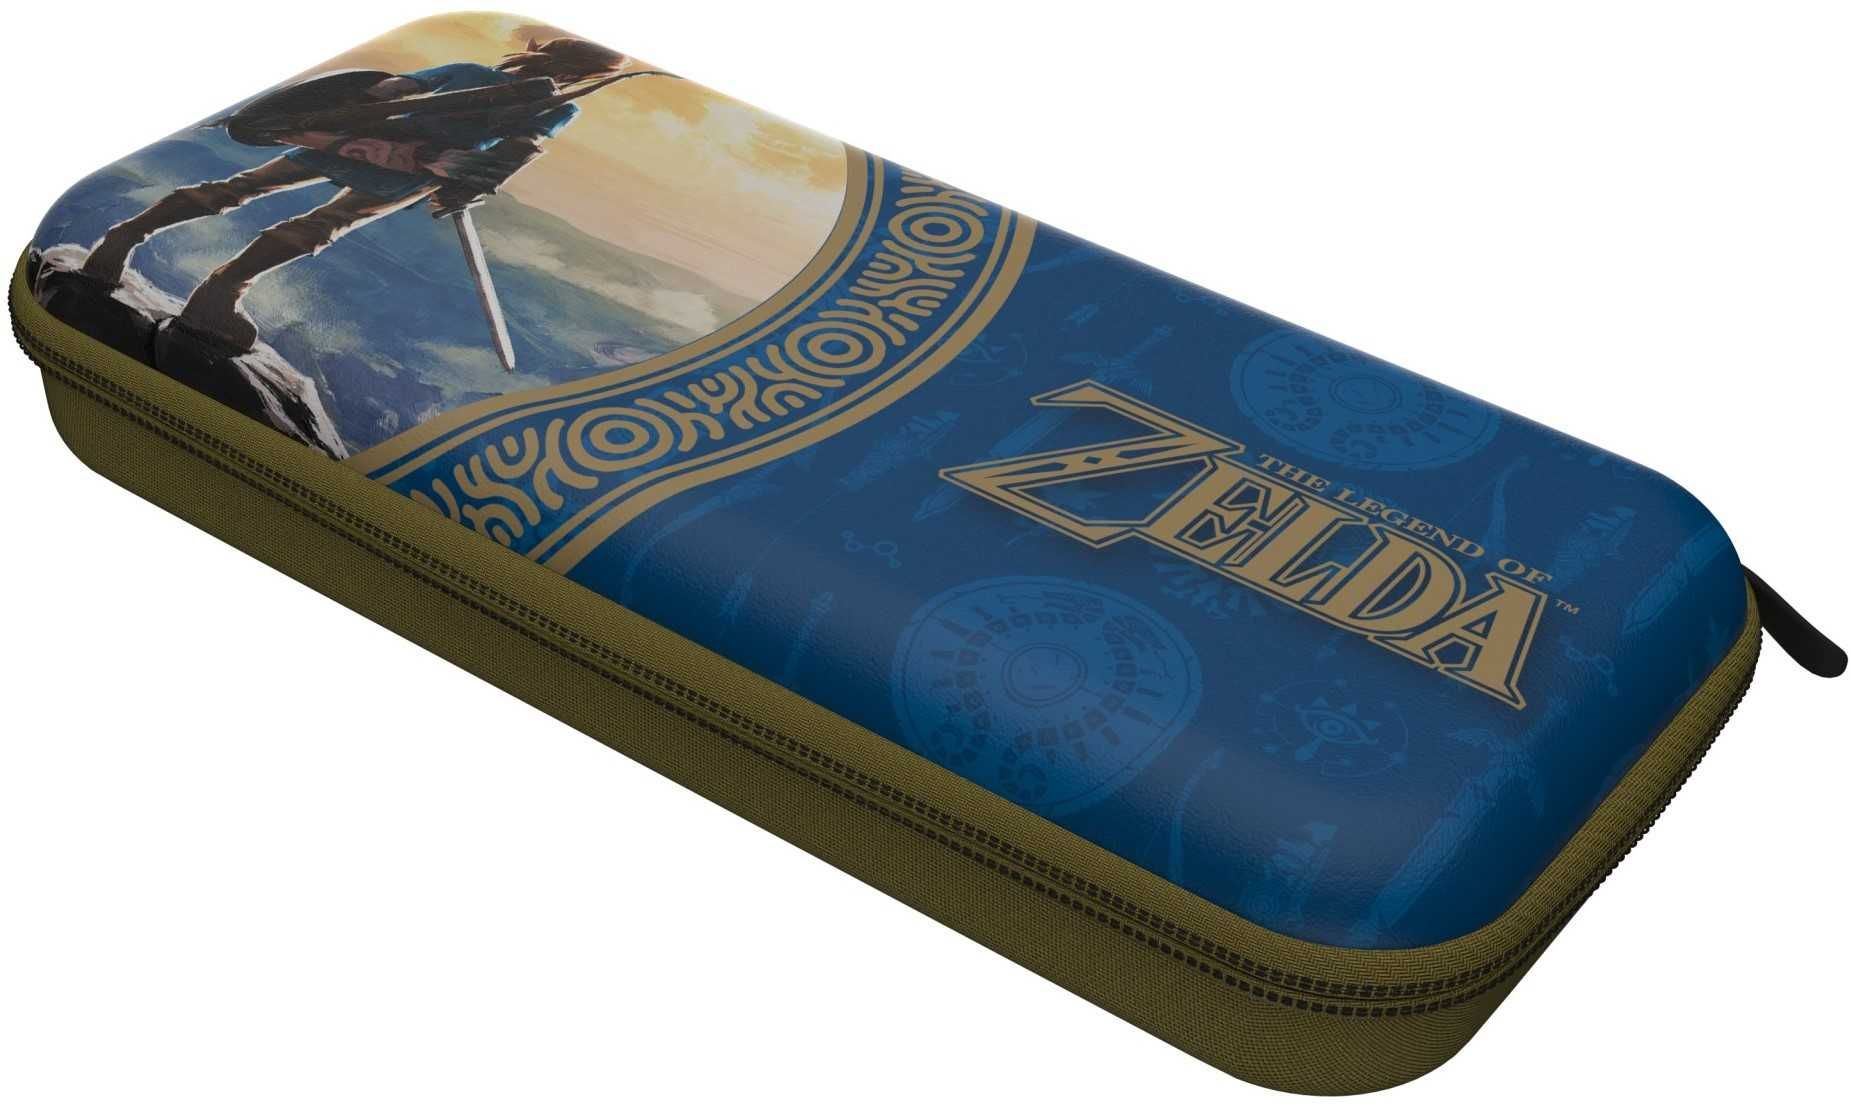 PDP SWITCH Etui na konsole Travel Case - Zelda Hyrule Blue